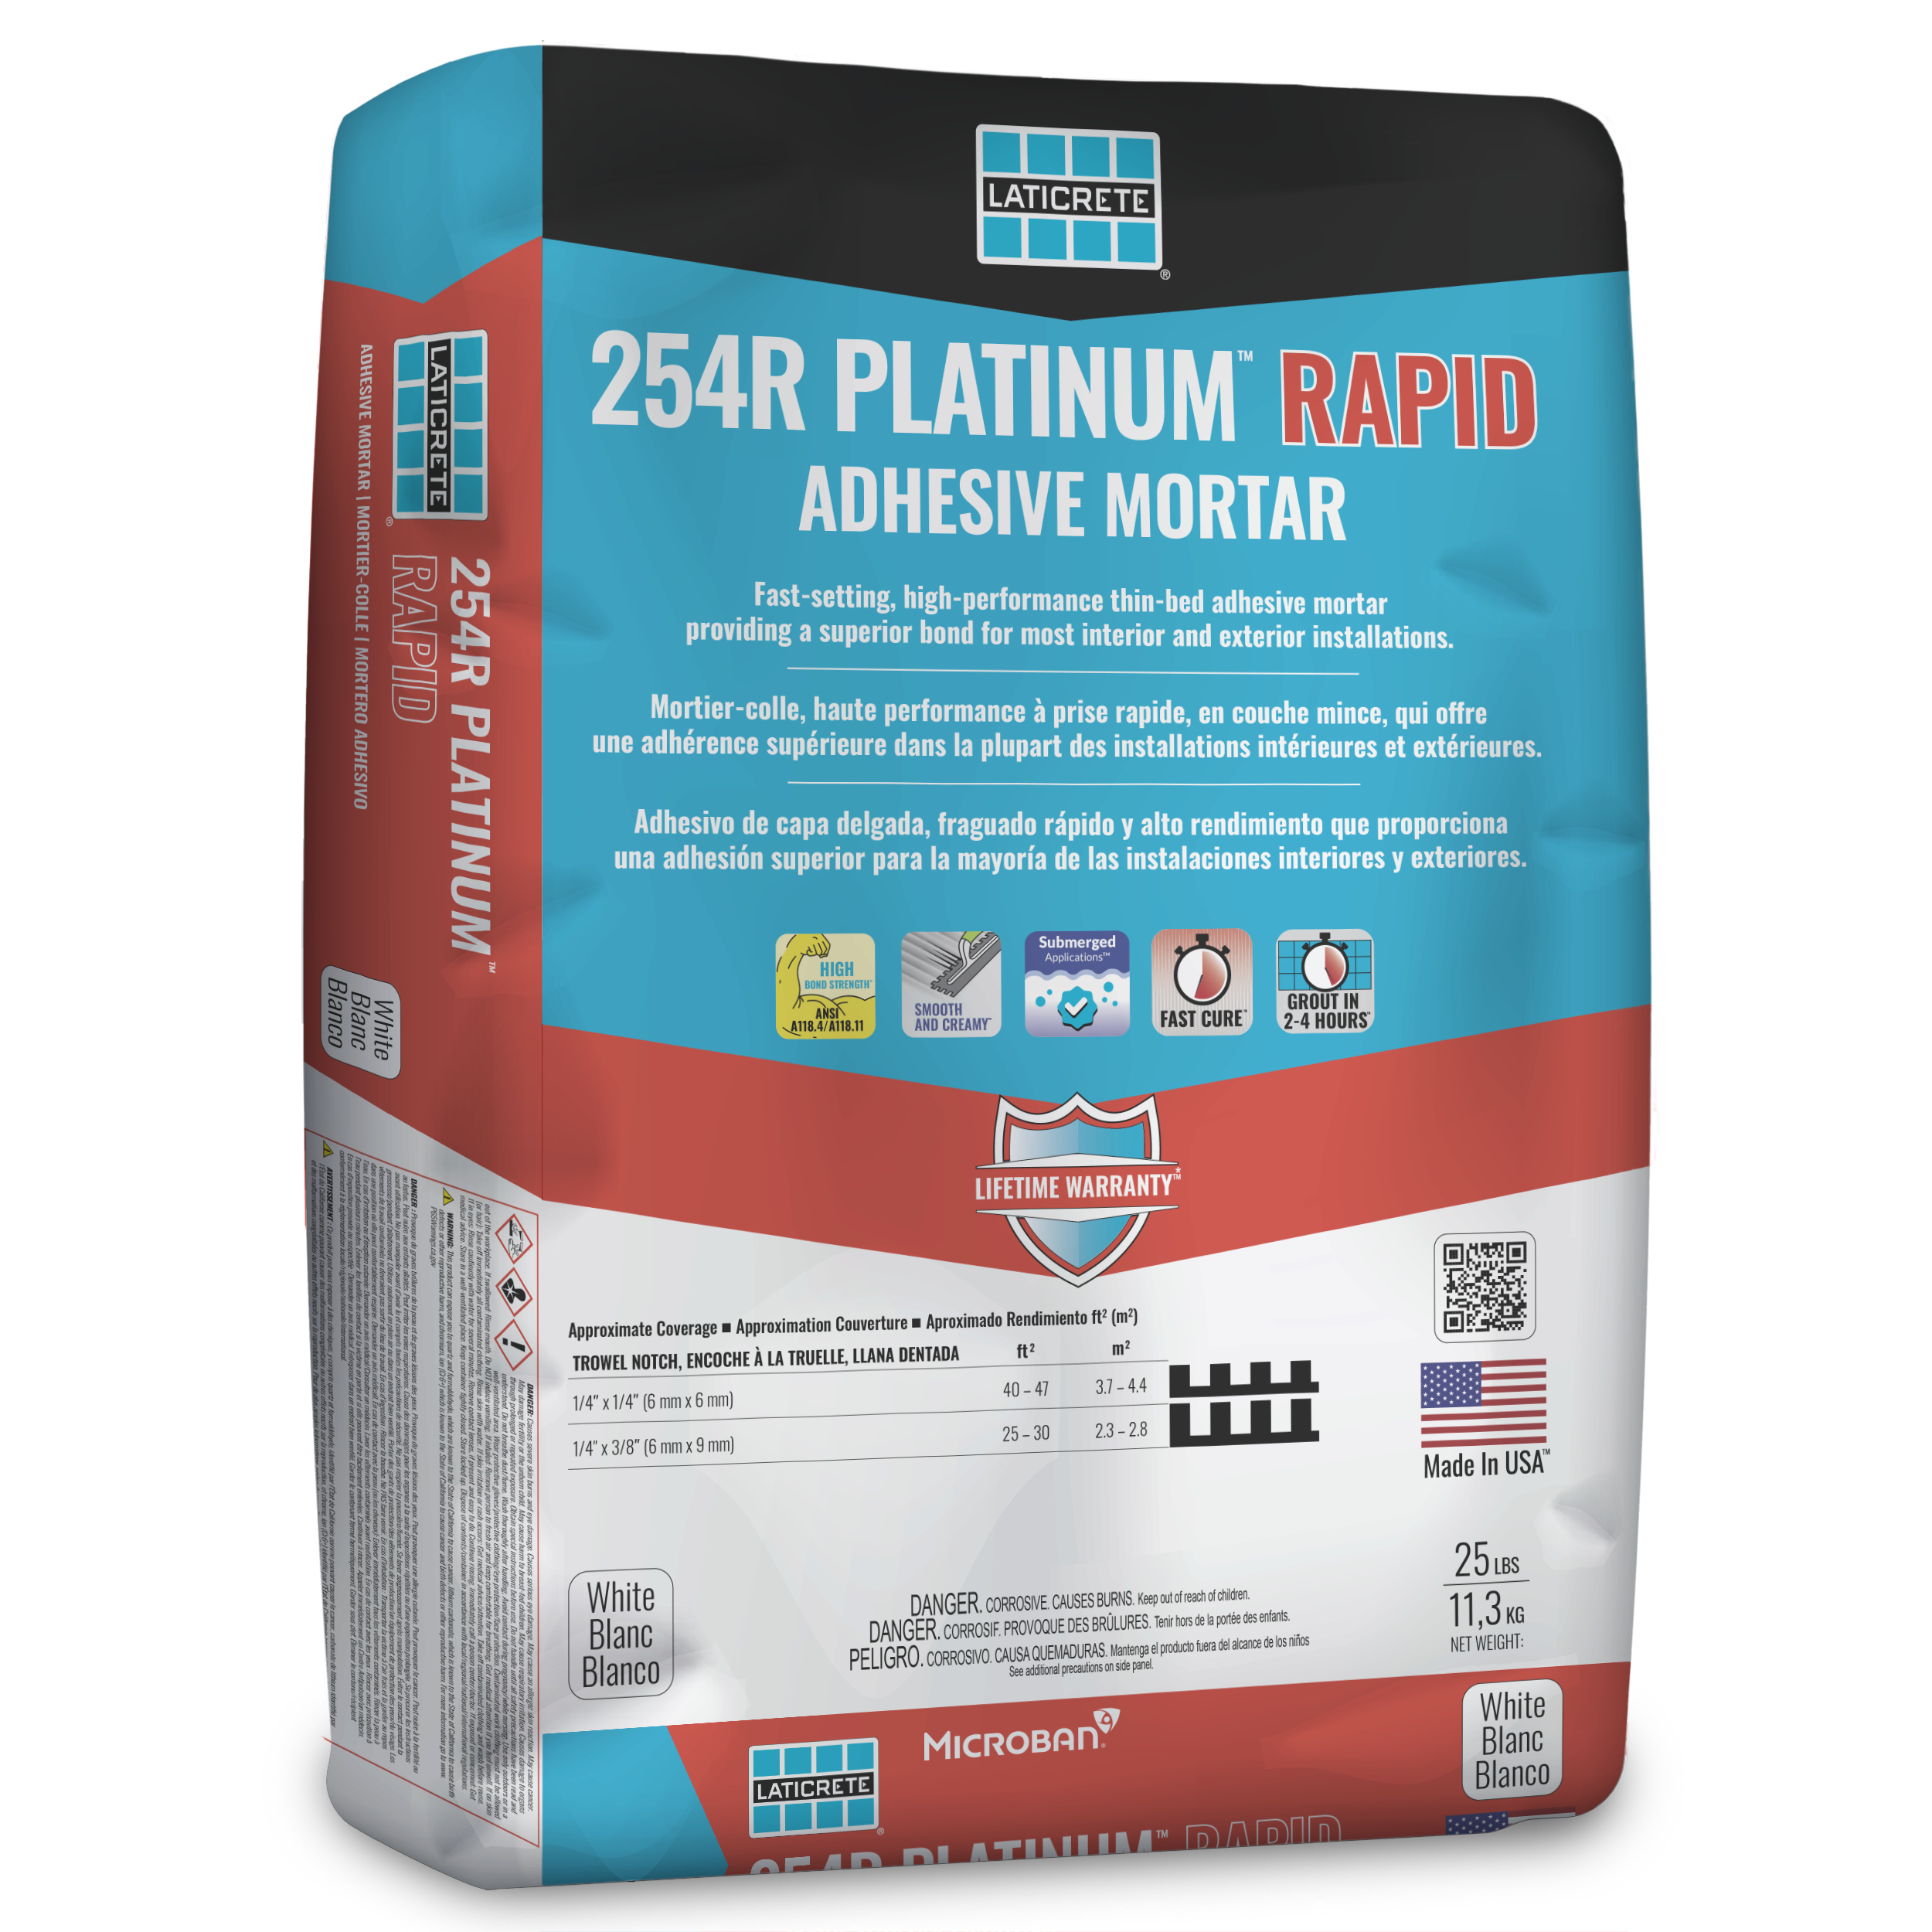 254R Platinum Rapid